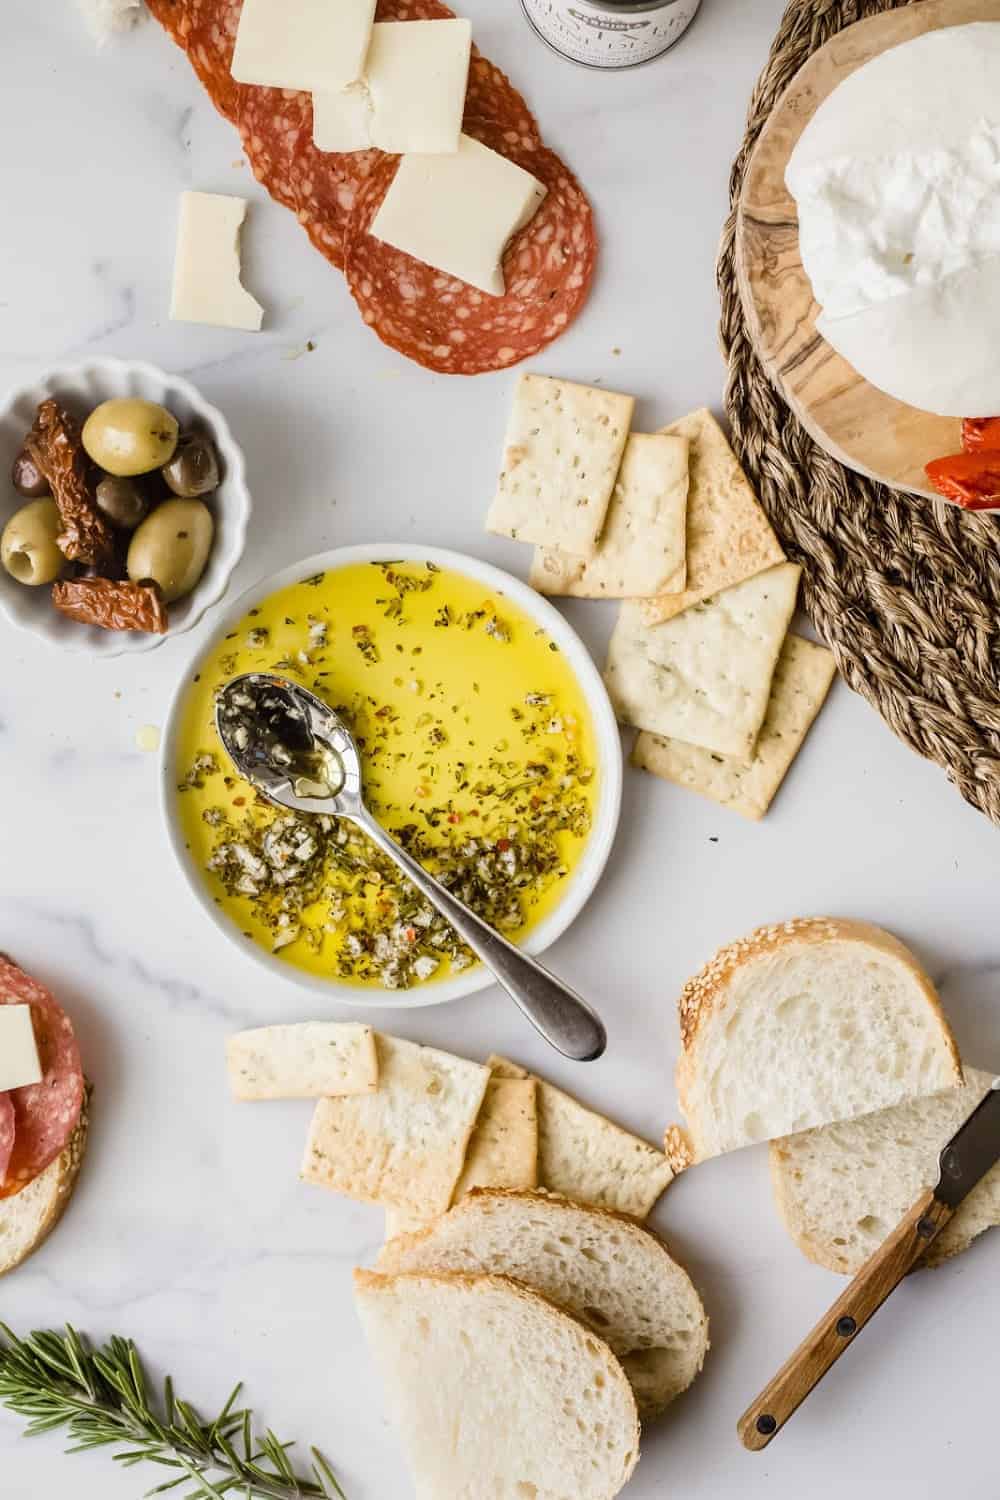 Löffel in eine Schüssel mit Olivenöl-Kräuter-dip, umgeben von Brot, Oliven und Wurstwaren